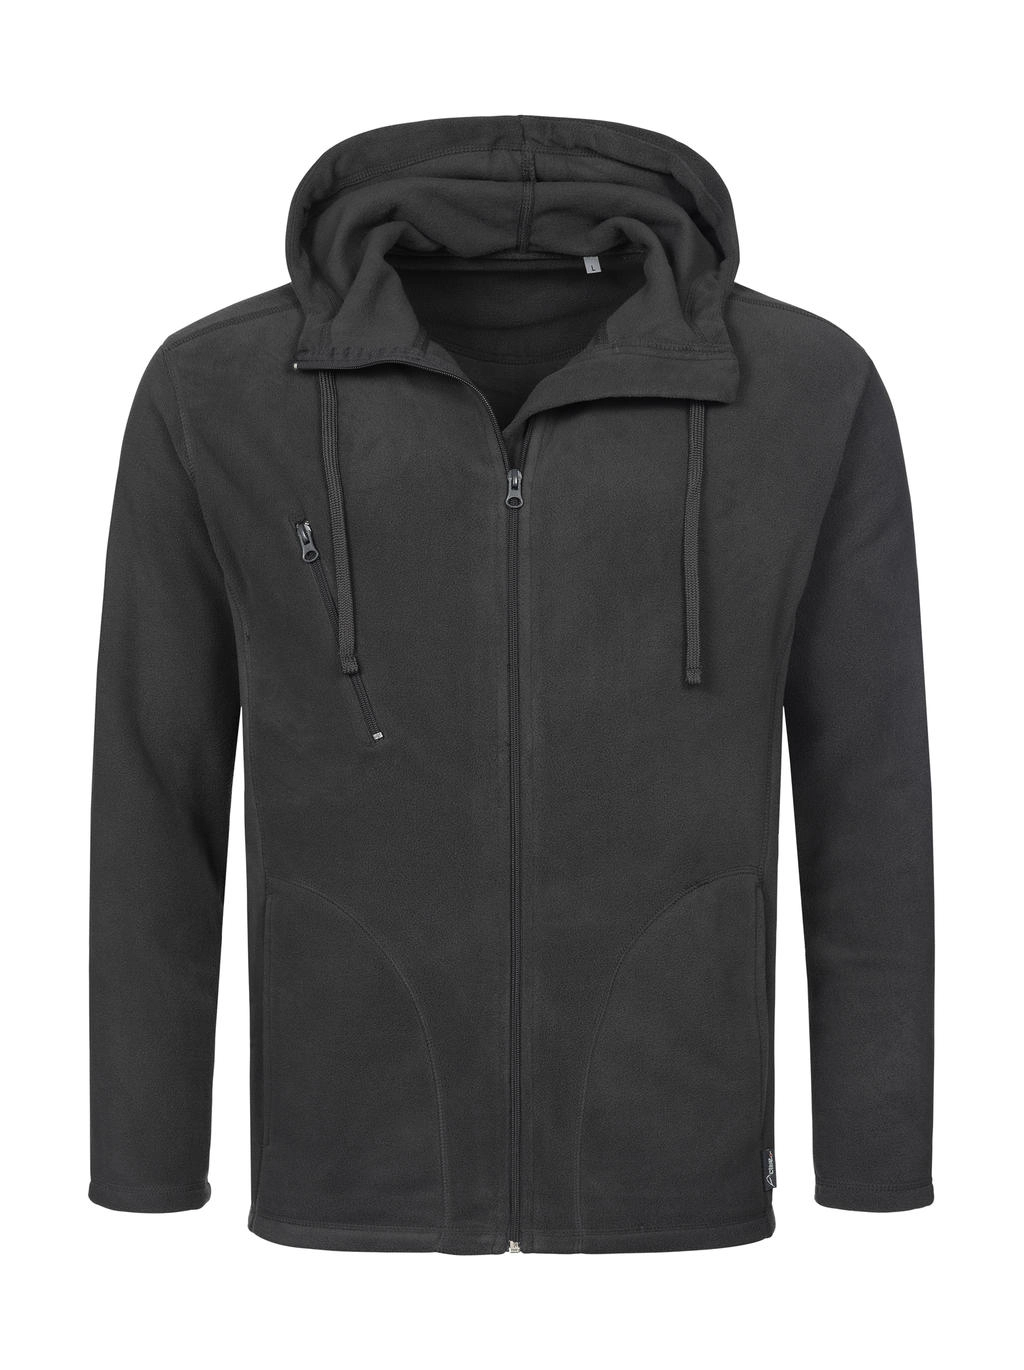 Hooded Fleece Jacket zum Besticken und Bedrucken in der Farbe Grey Steel mit Ihren Logo, Schriftzug oder Motiv.